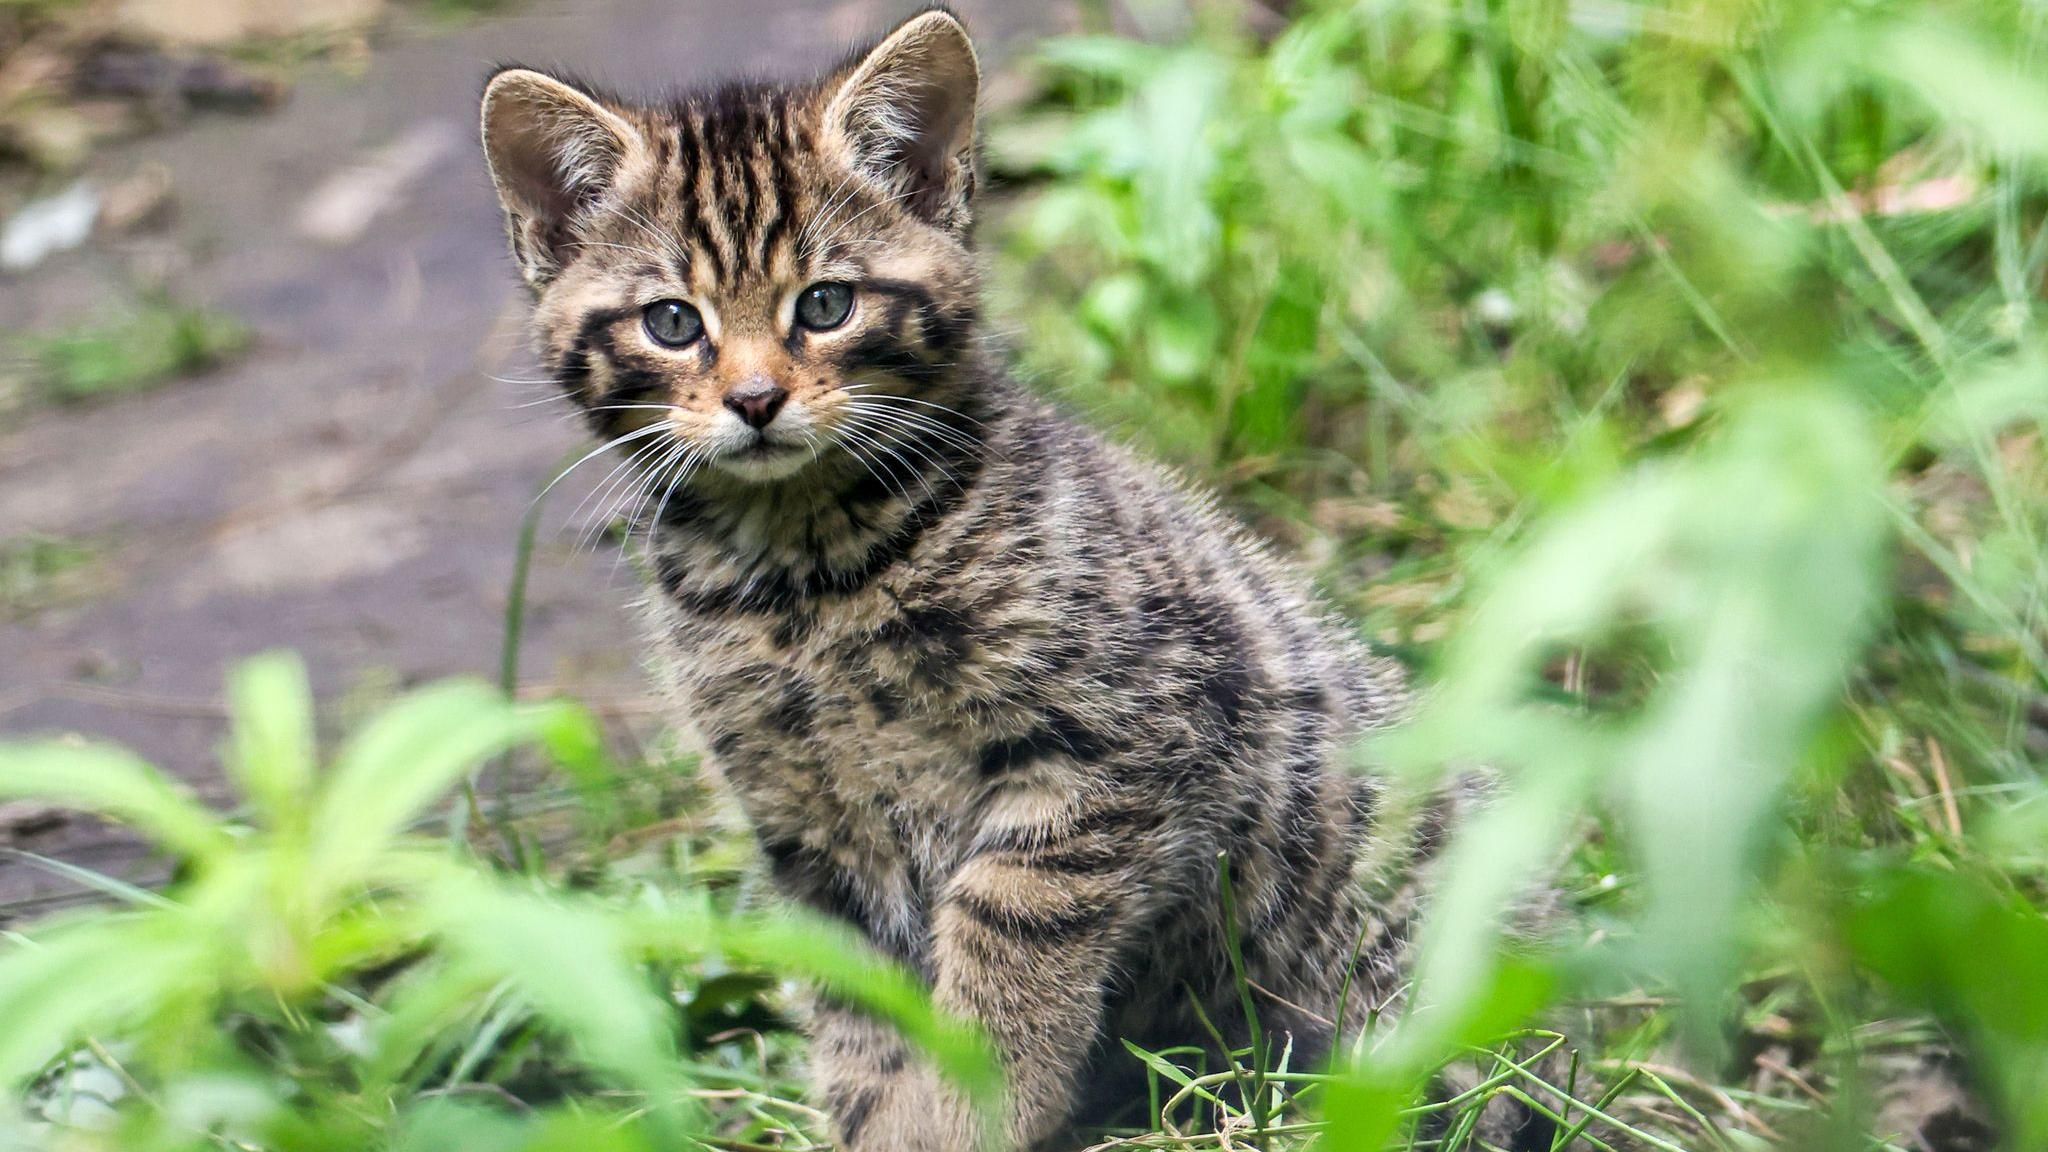 A wildcat kitten